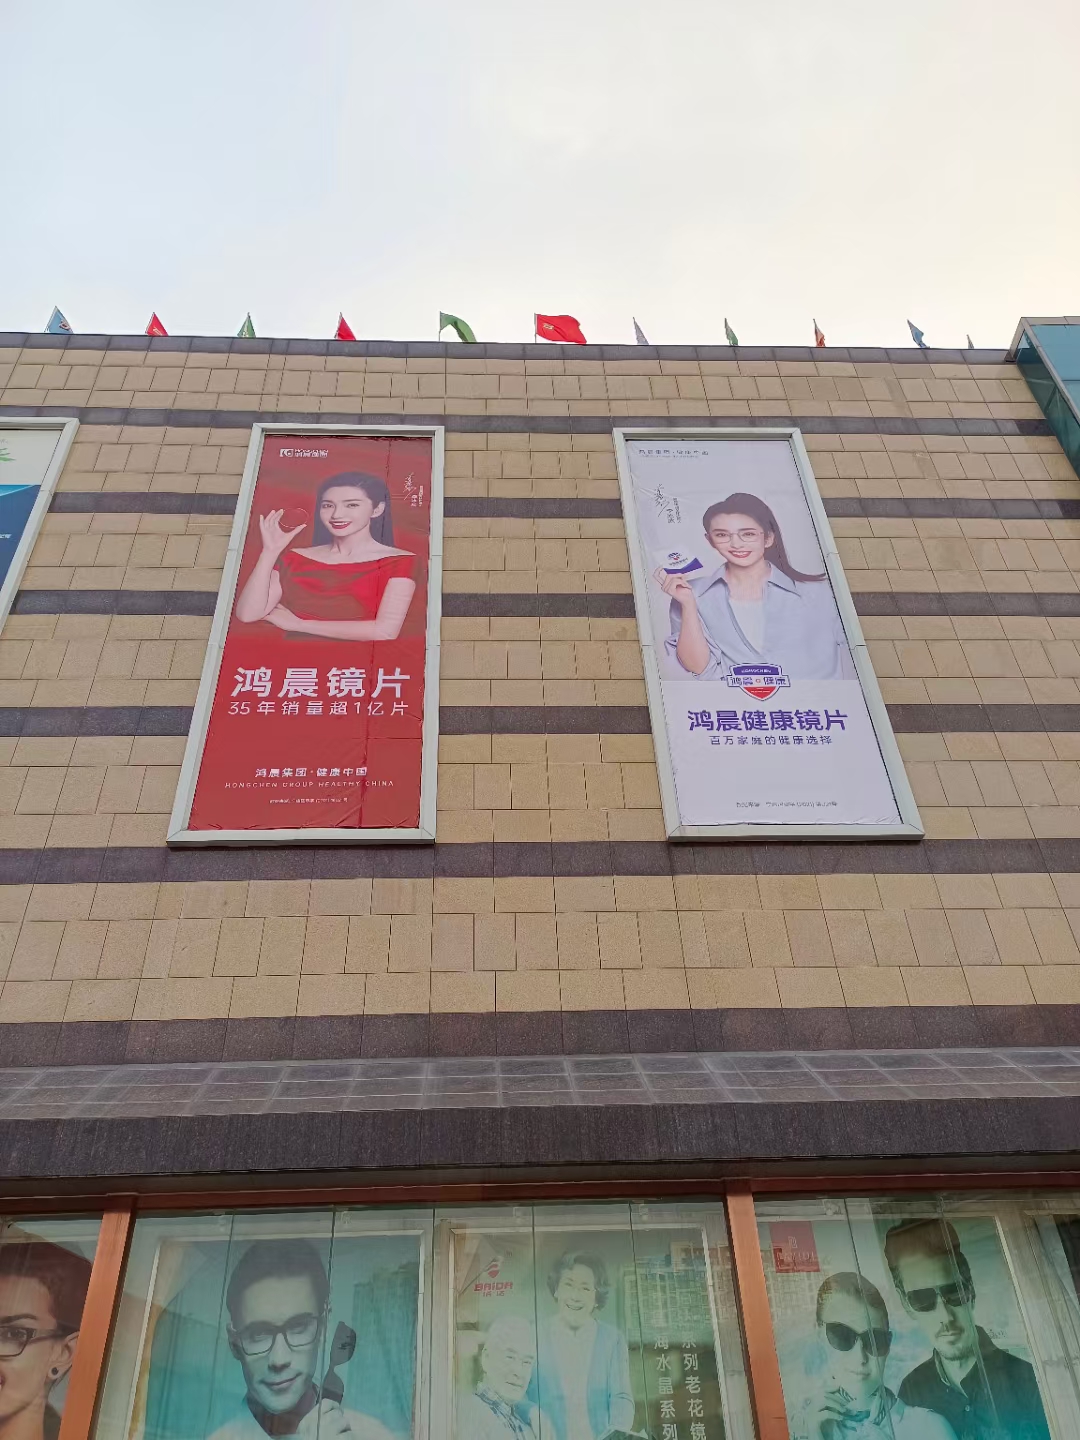 ερχόμαστε!Νέα διαφήμιση στην αγορά οπτικών πόλεων Zhengzhou